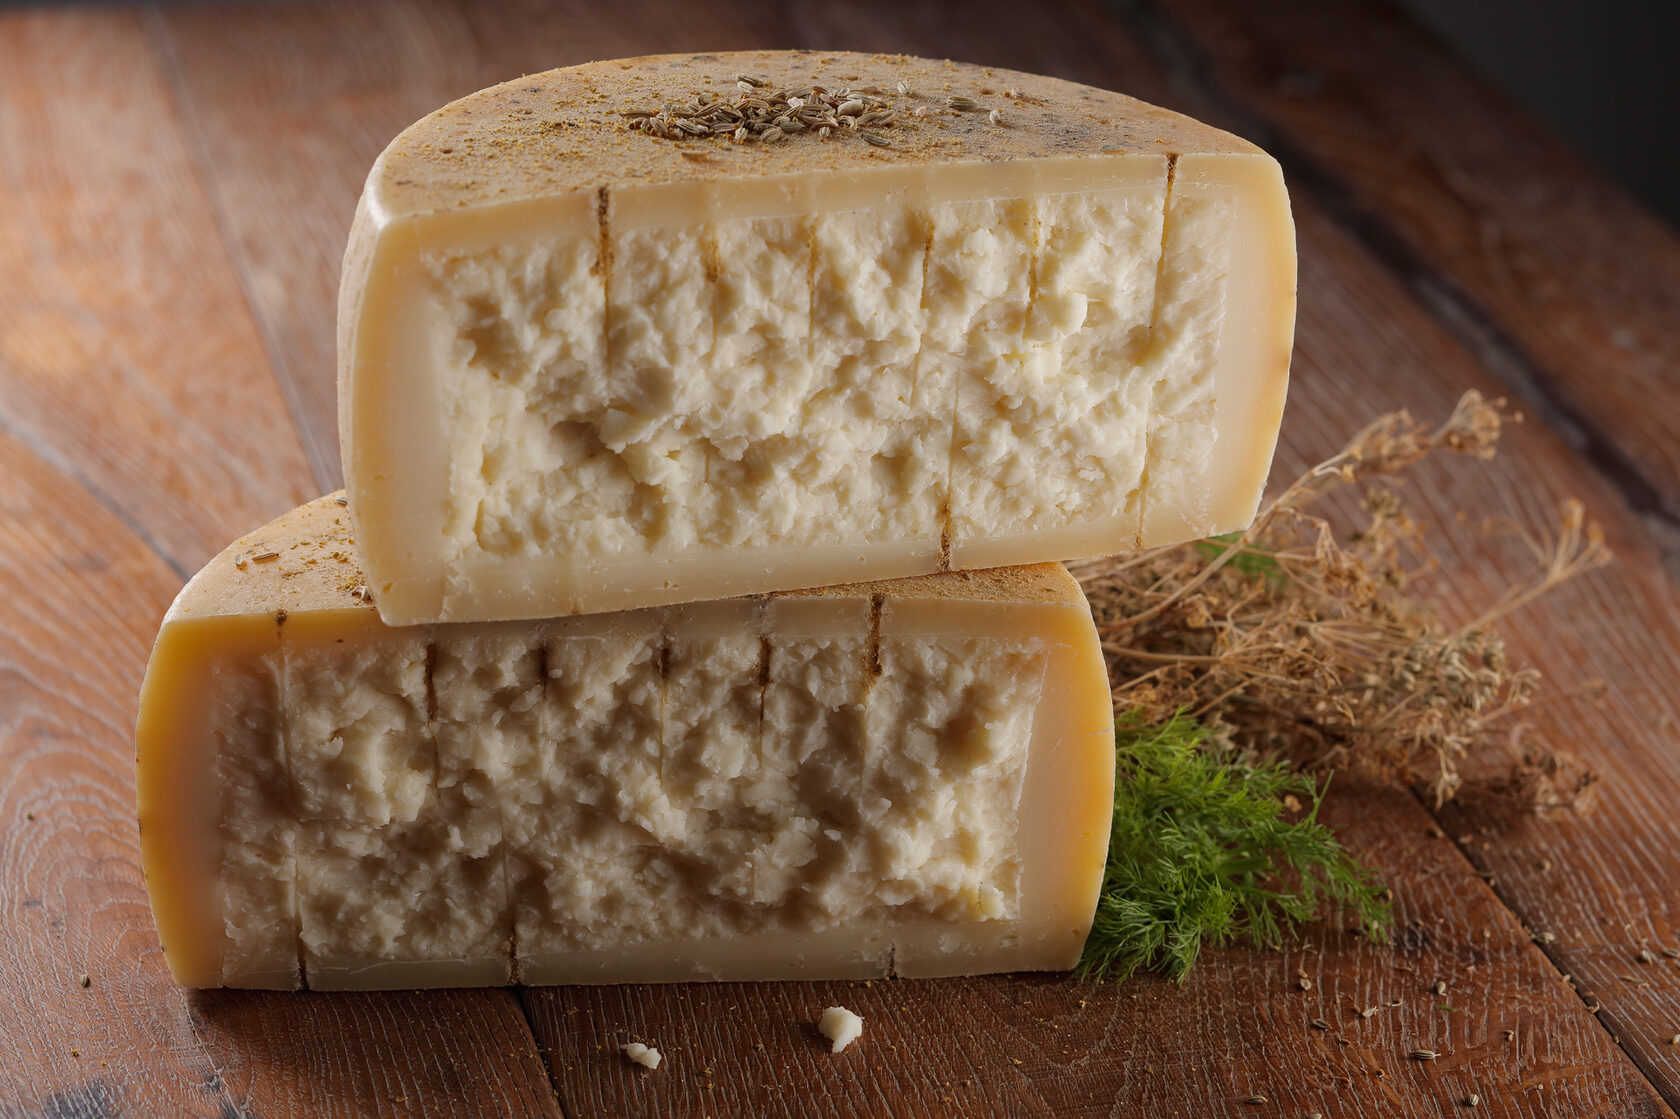 производство сыра в италии